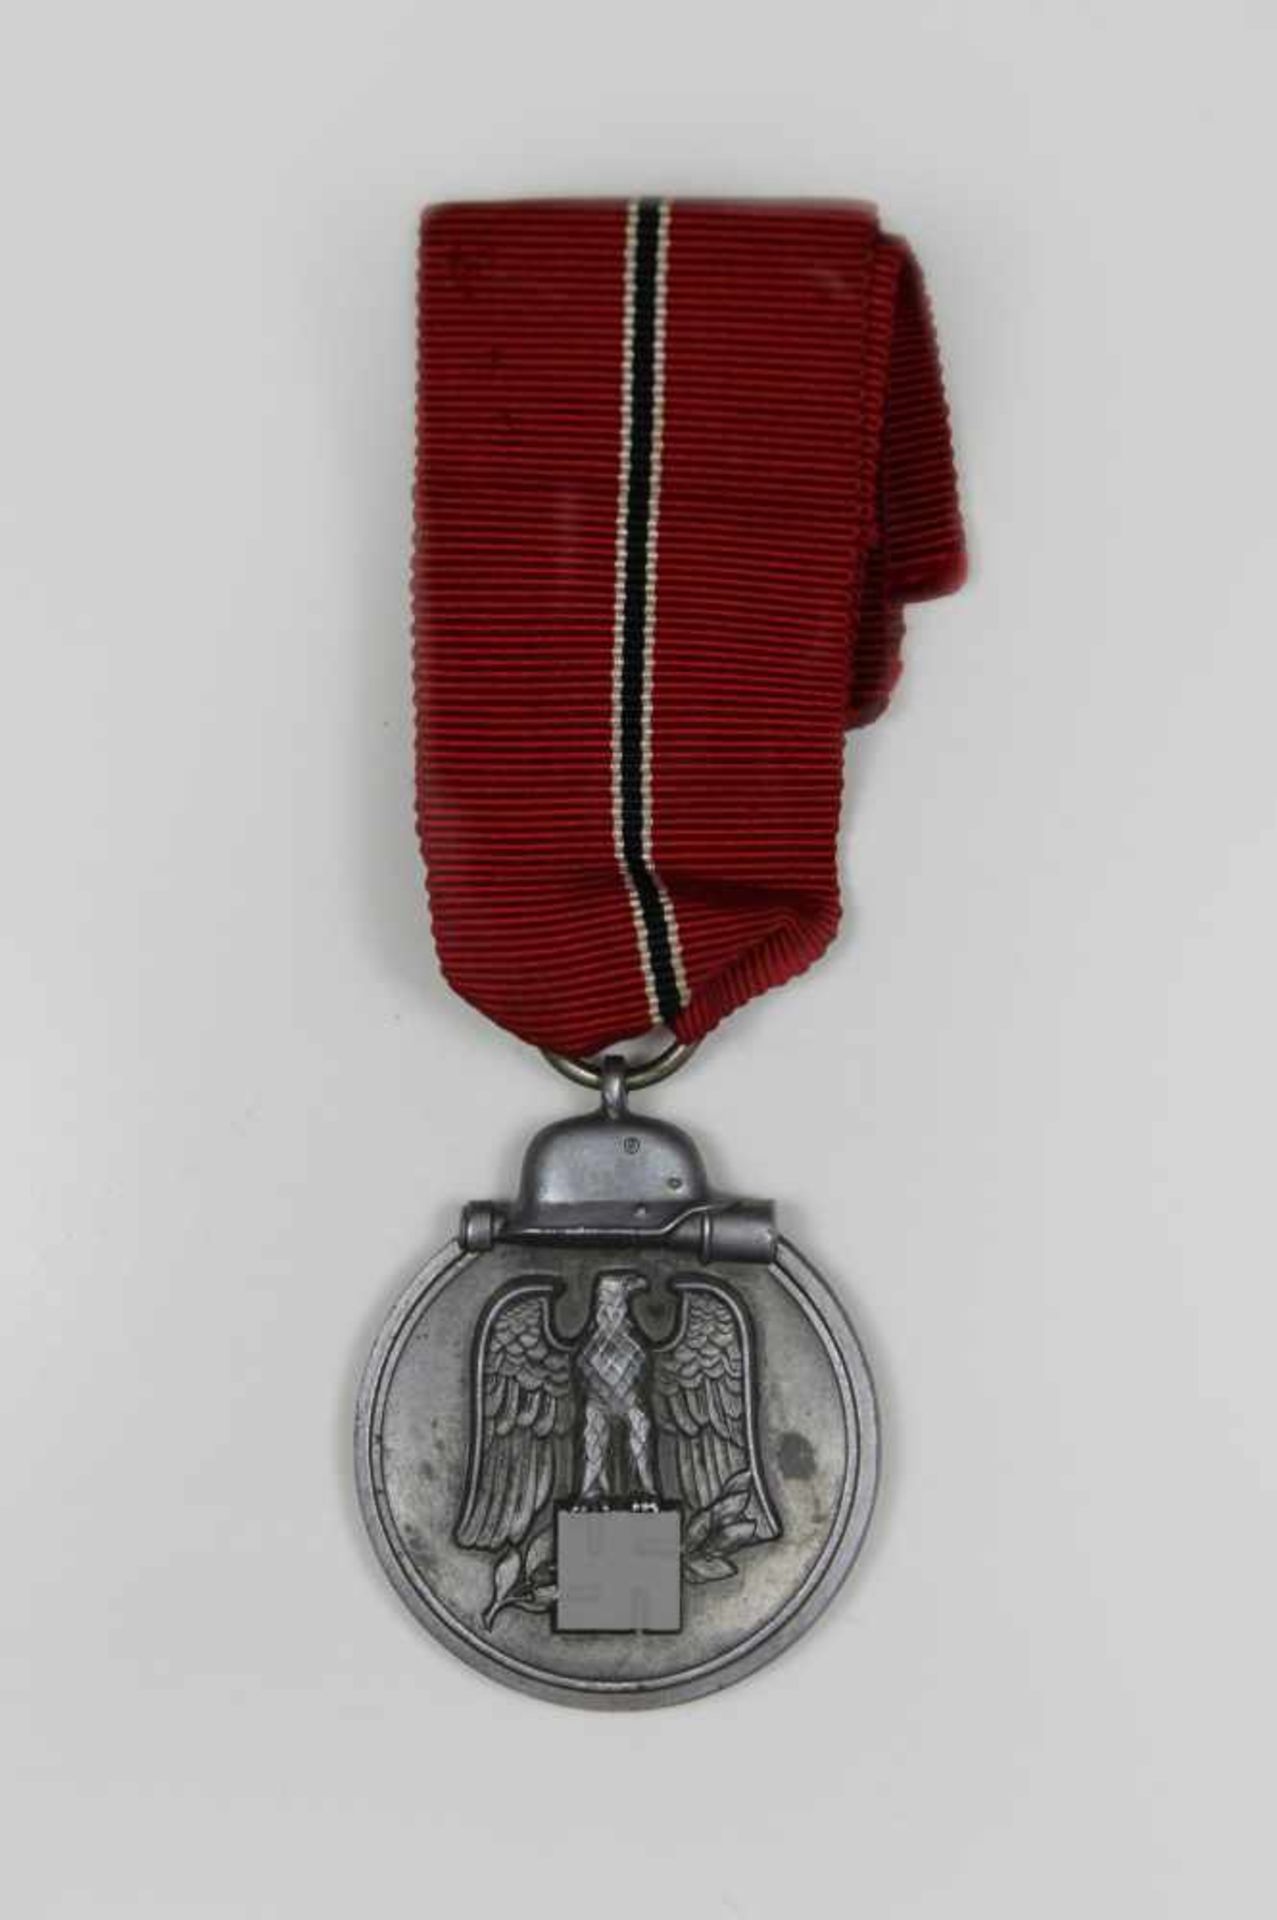 Ostmedaille mit rotem Ordensband (mit schnalem Streifen weiß/schwarz/weiß), Avers mit Reichsadler